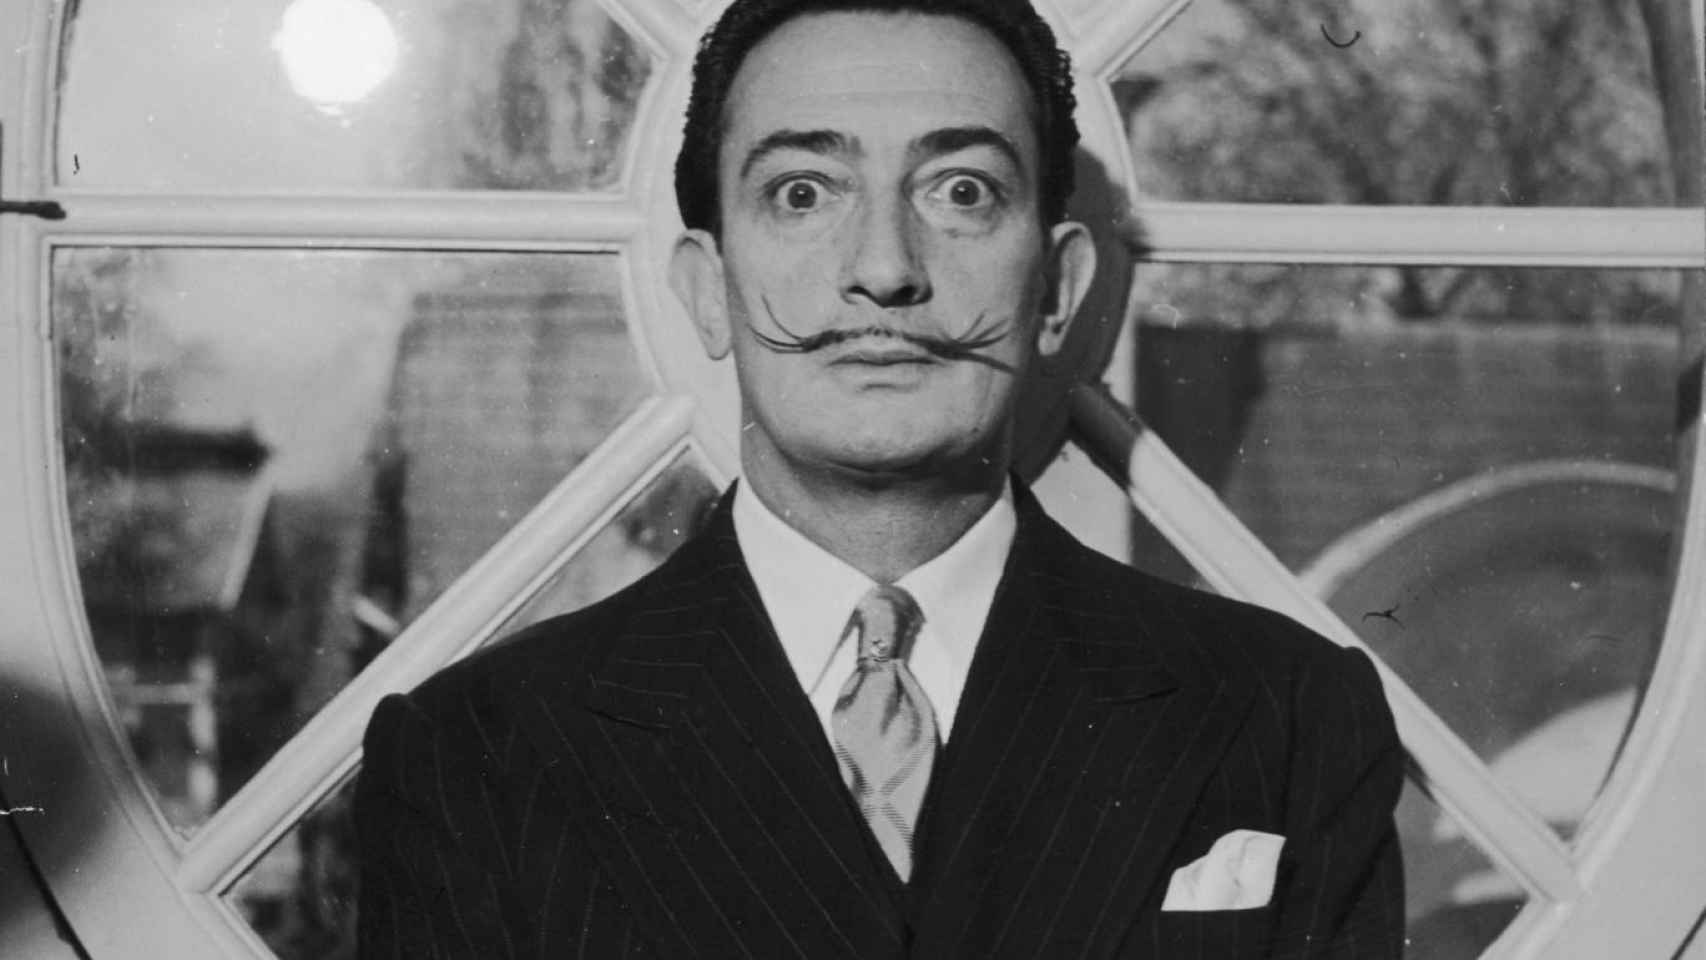 El artista Salvador Dalí, con su característico bigote.